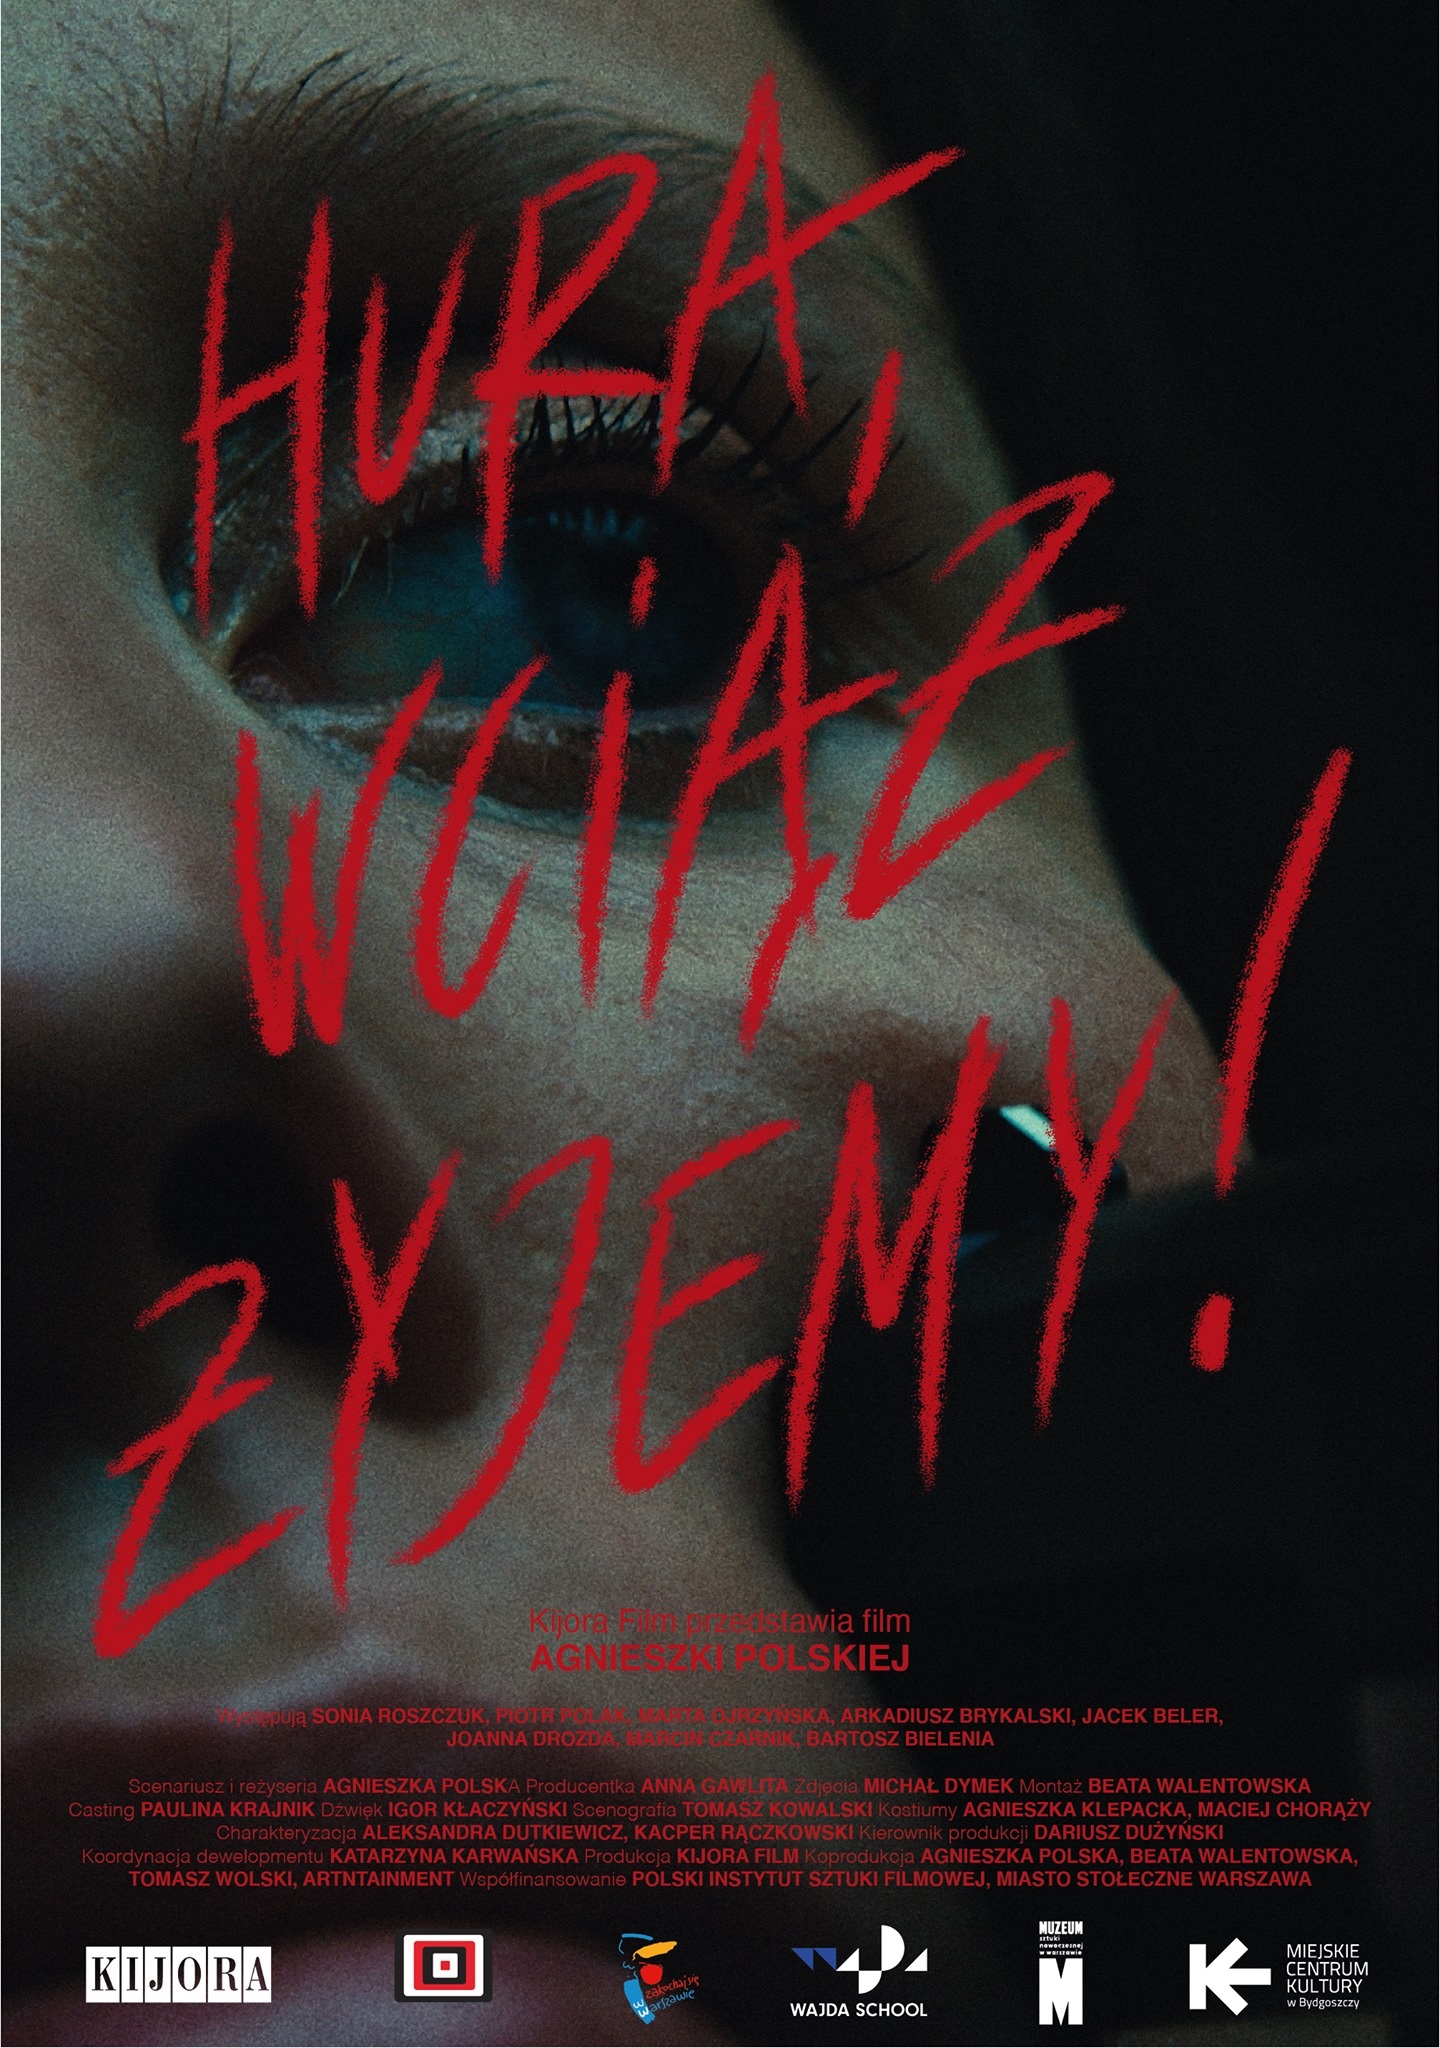 Hura, wciaz zyjemy! (2020) постер